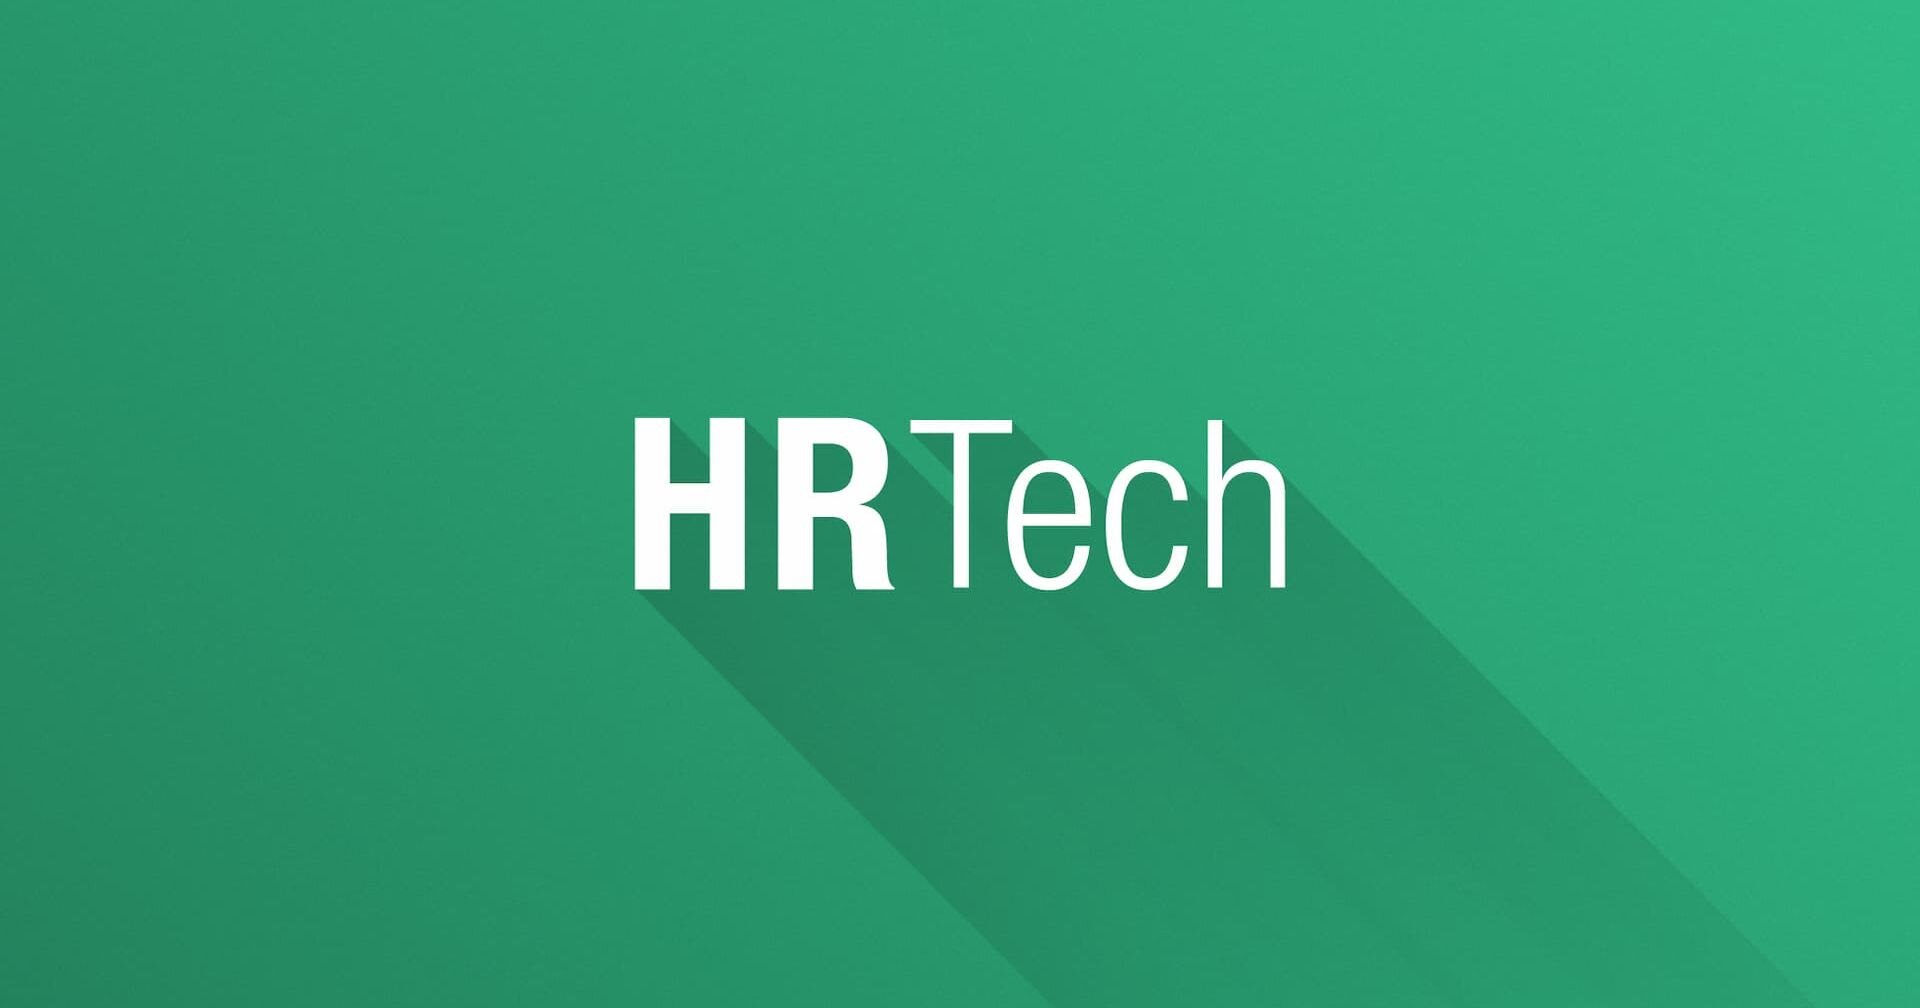 HRテック（HRテクノロジー）とは？ 代表的な企業や提供するシステム・導入事例を紹介